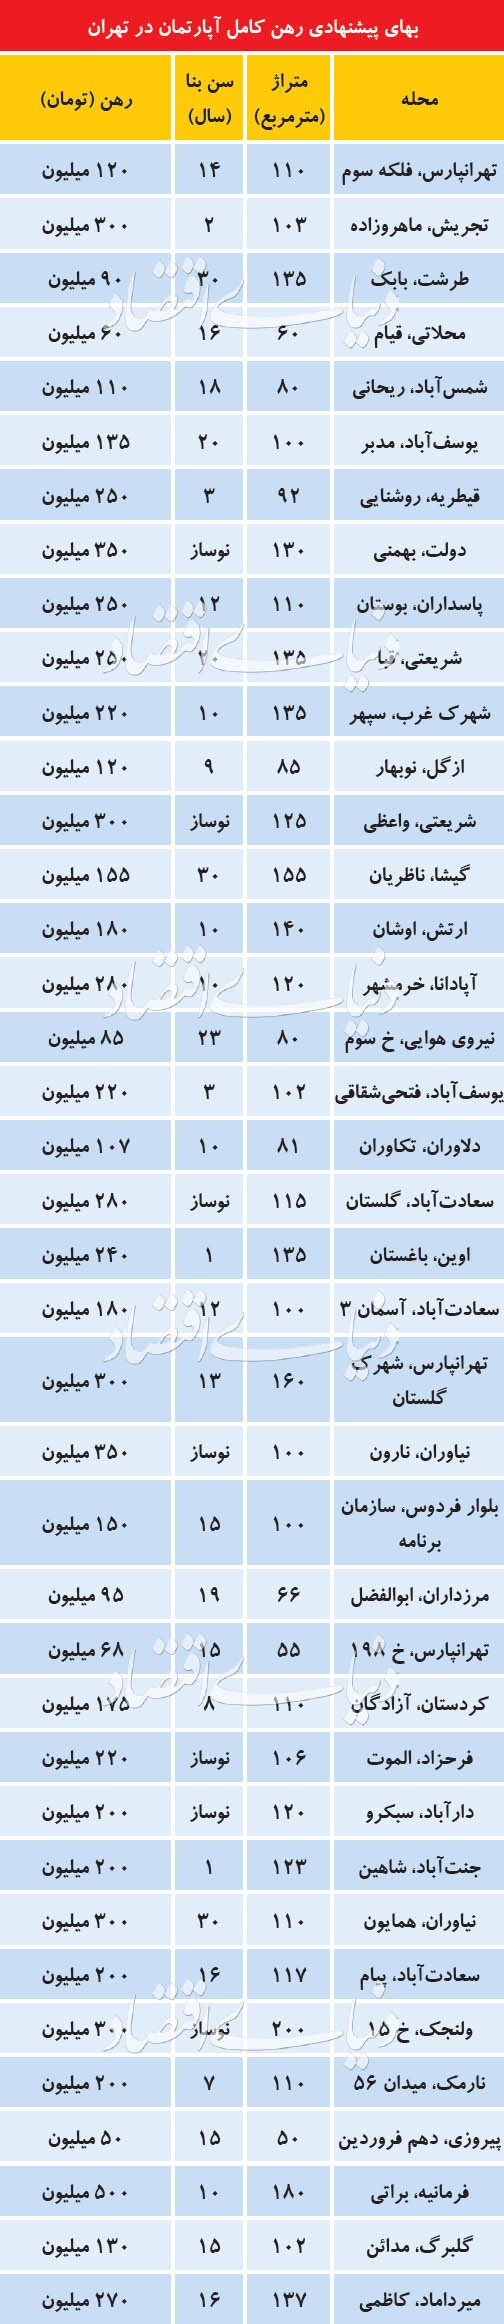 قیمت رهن خانه در مناطق مختلف تهران